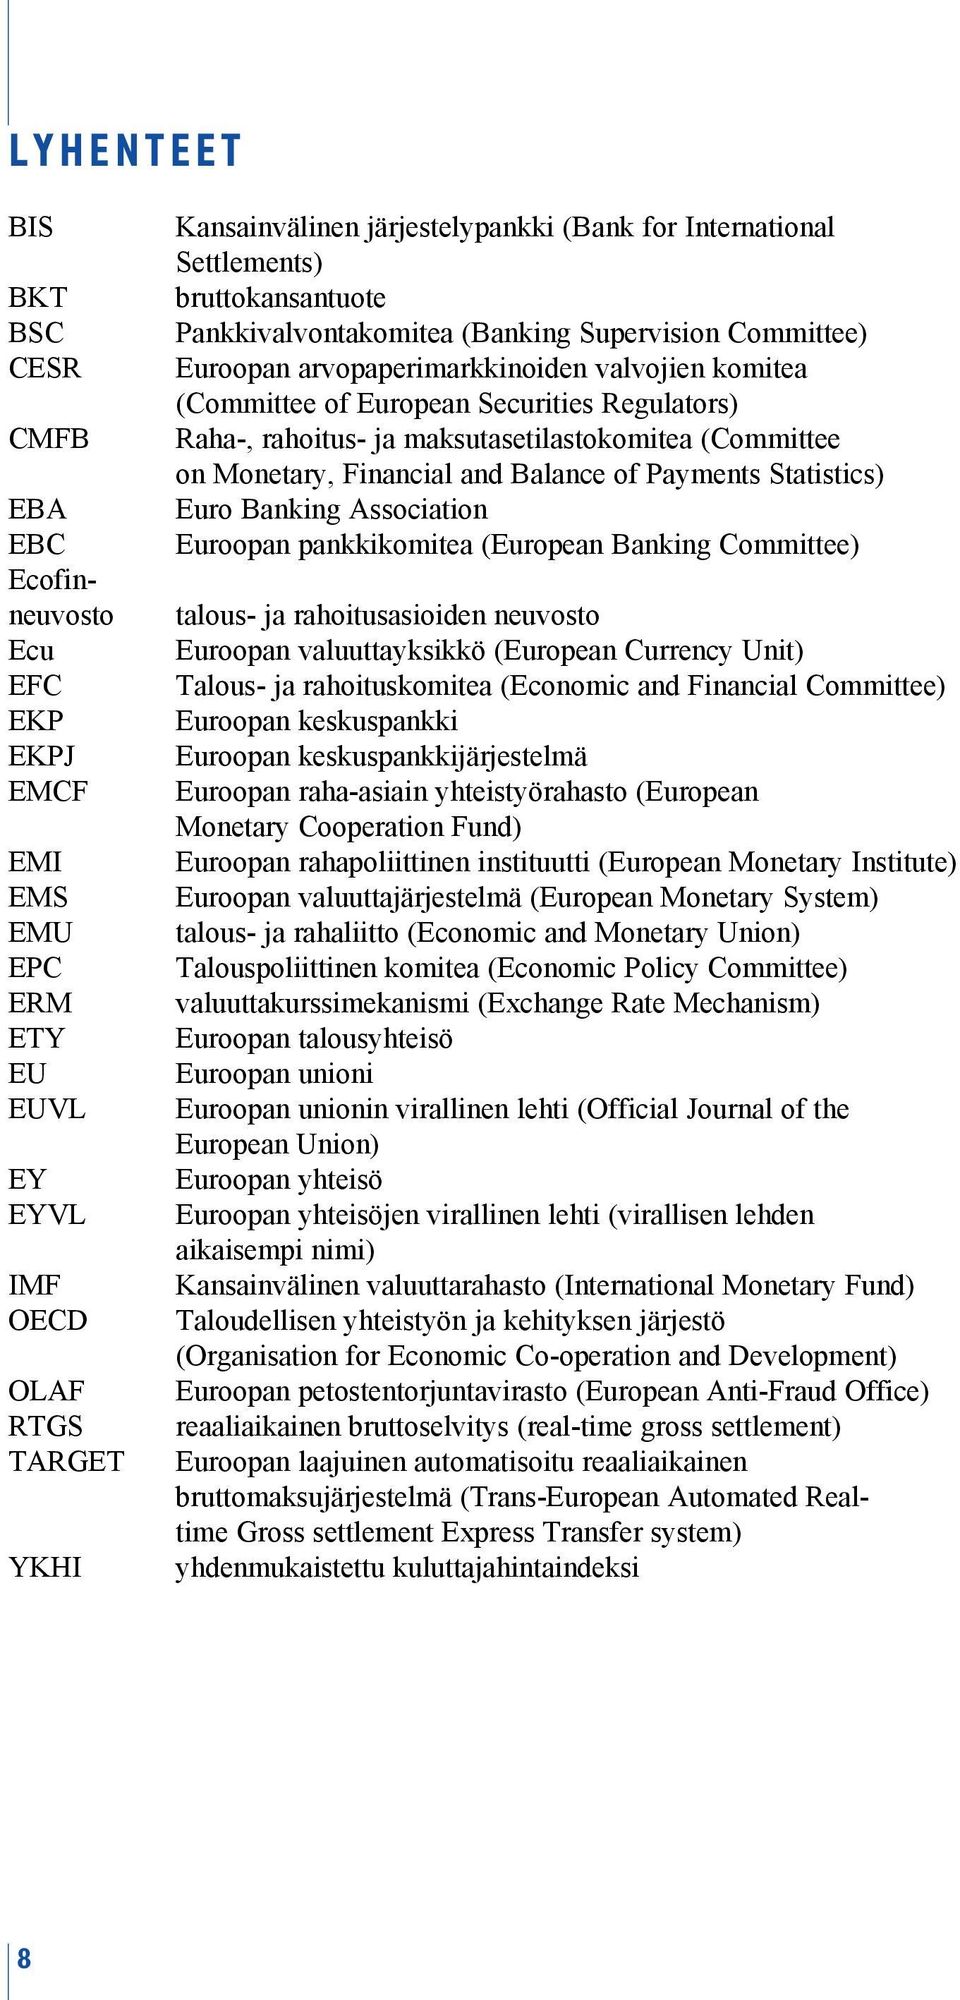 Raha-, rahoitus- ja maksutasetilastokomitea (Committee on Monetary, Financial and Balance of Payments Statistics) Euro Banking Association Euroopan pankkikomitea (European Banking Committee) talous-